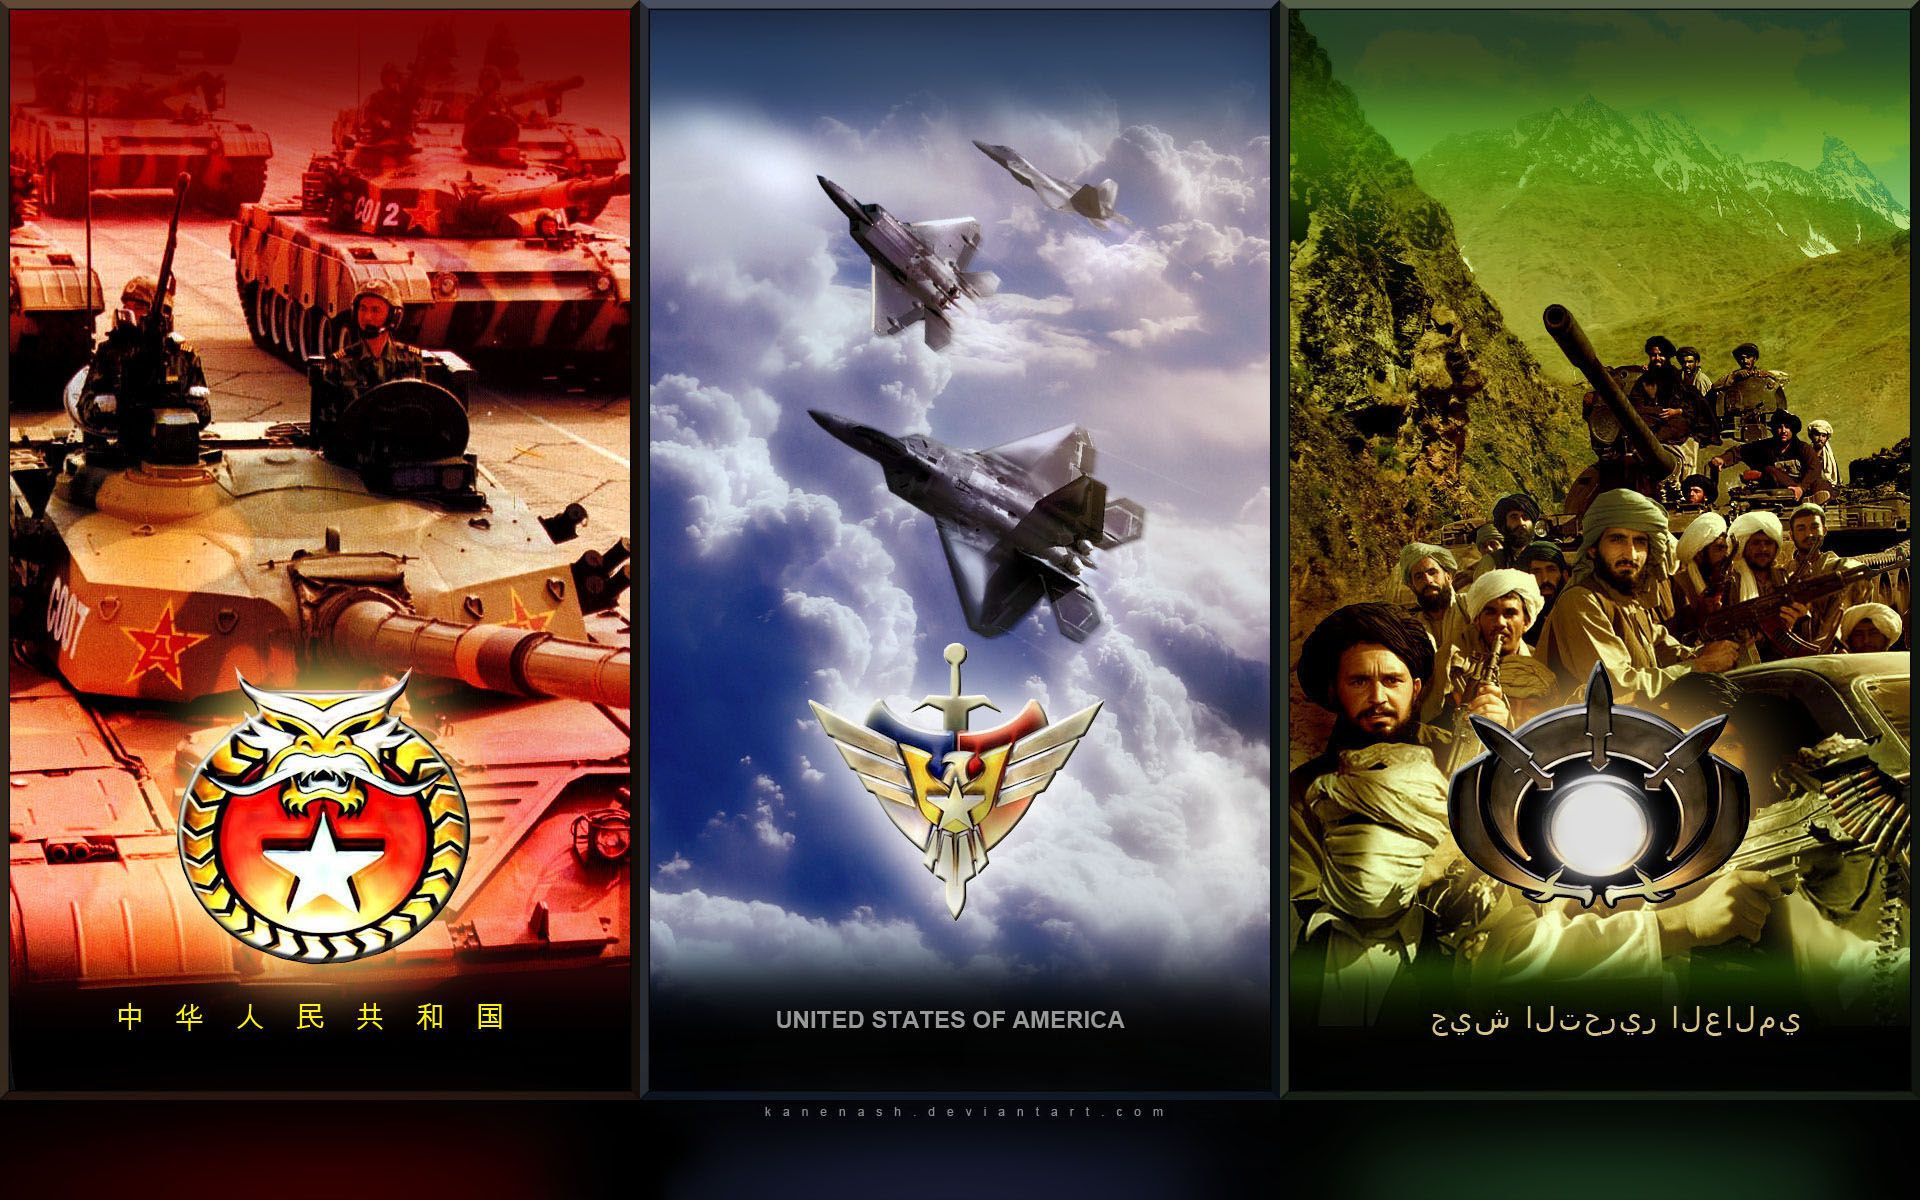 Command & Conquer Generals Wallpaper. Conquer Online Wallpaper, Command Conquer Tank Wallpaper and Command Conquer Wallpaper